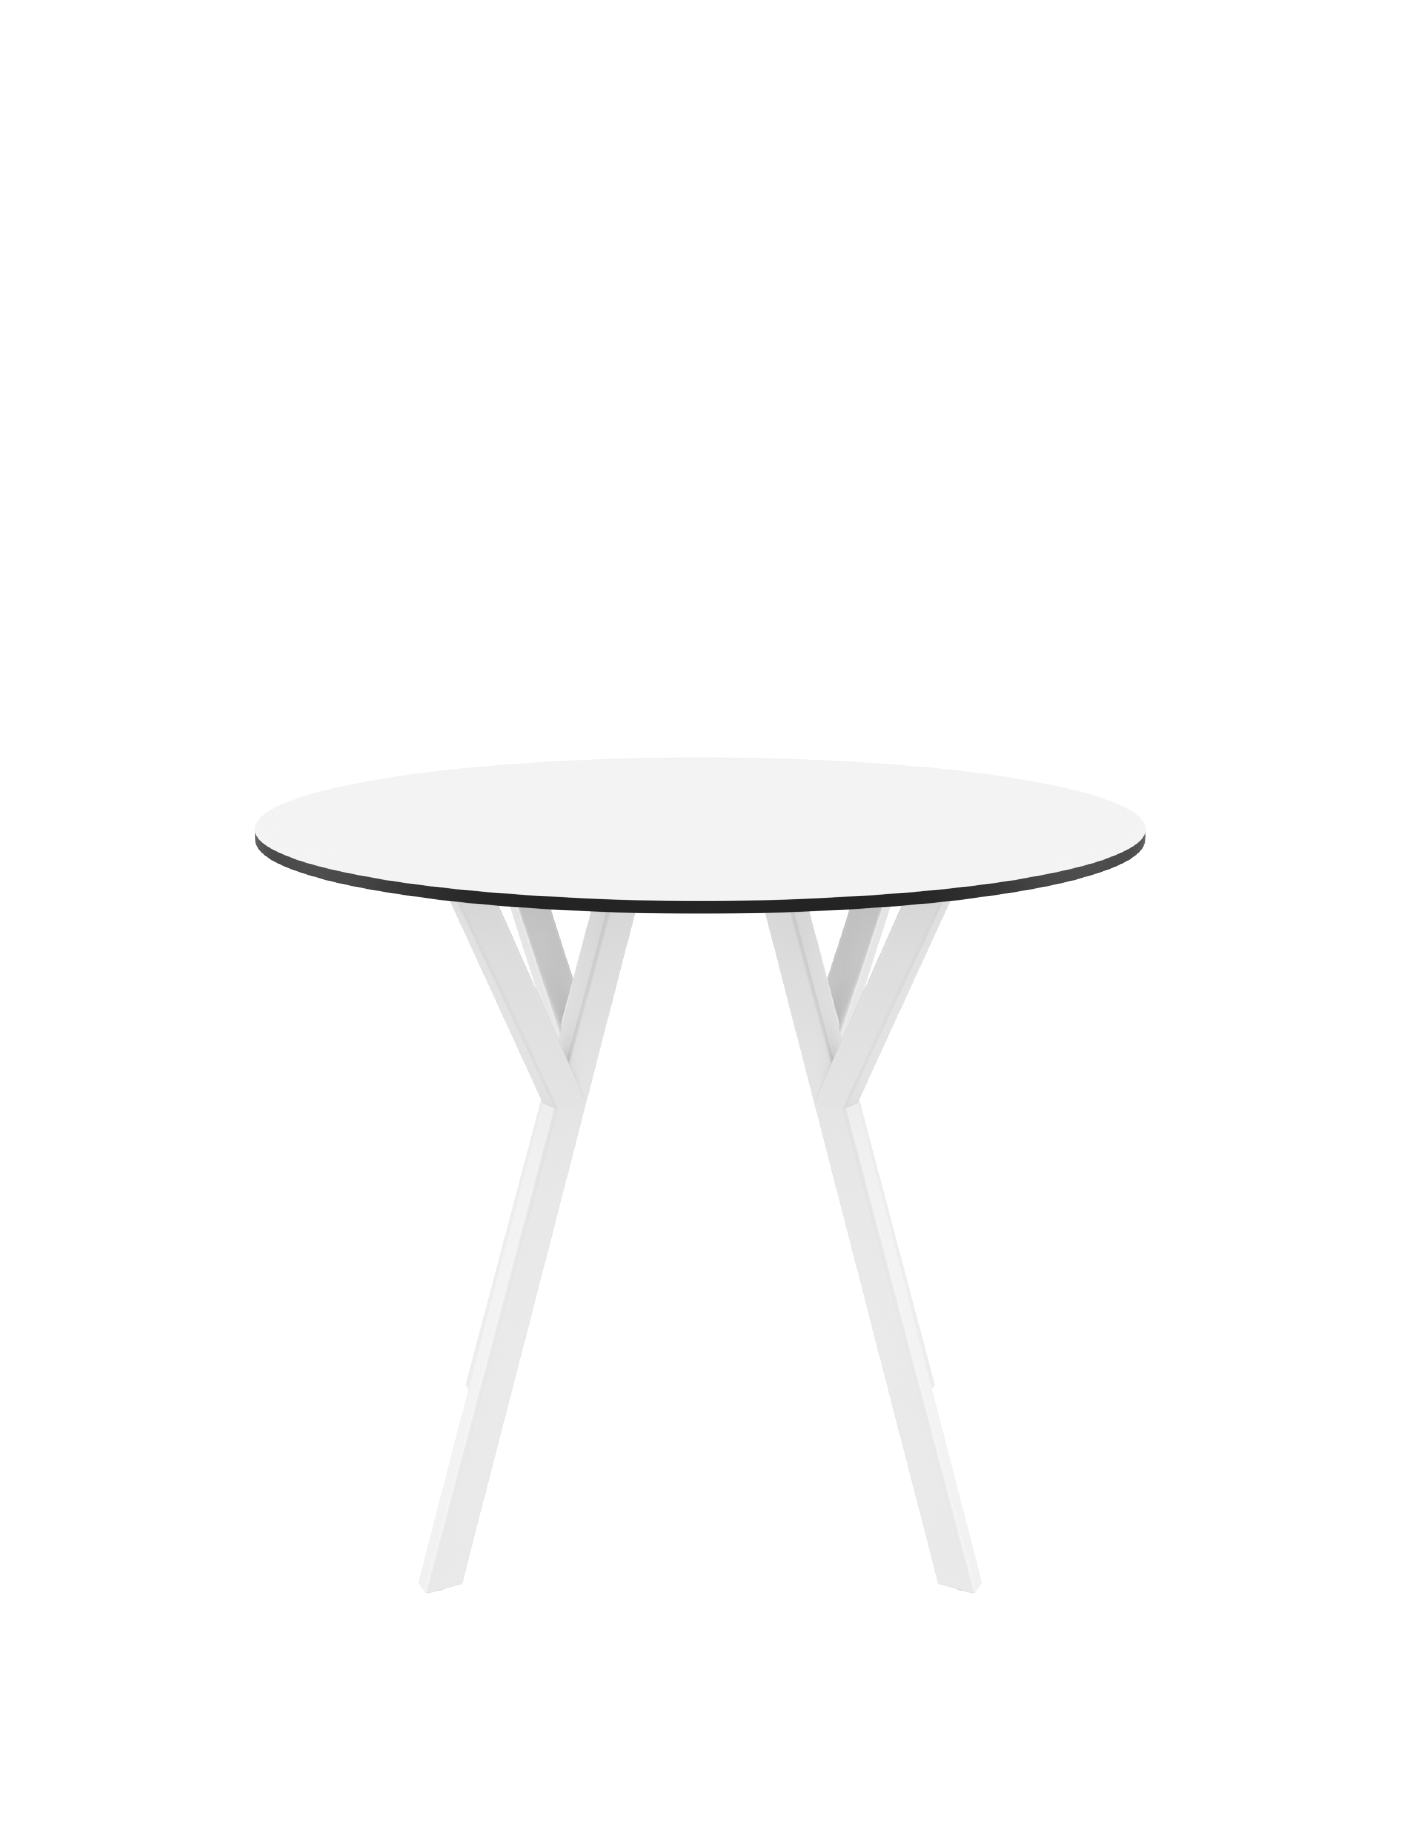 맥스원형 테이블 화이트